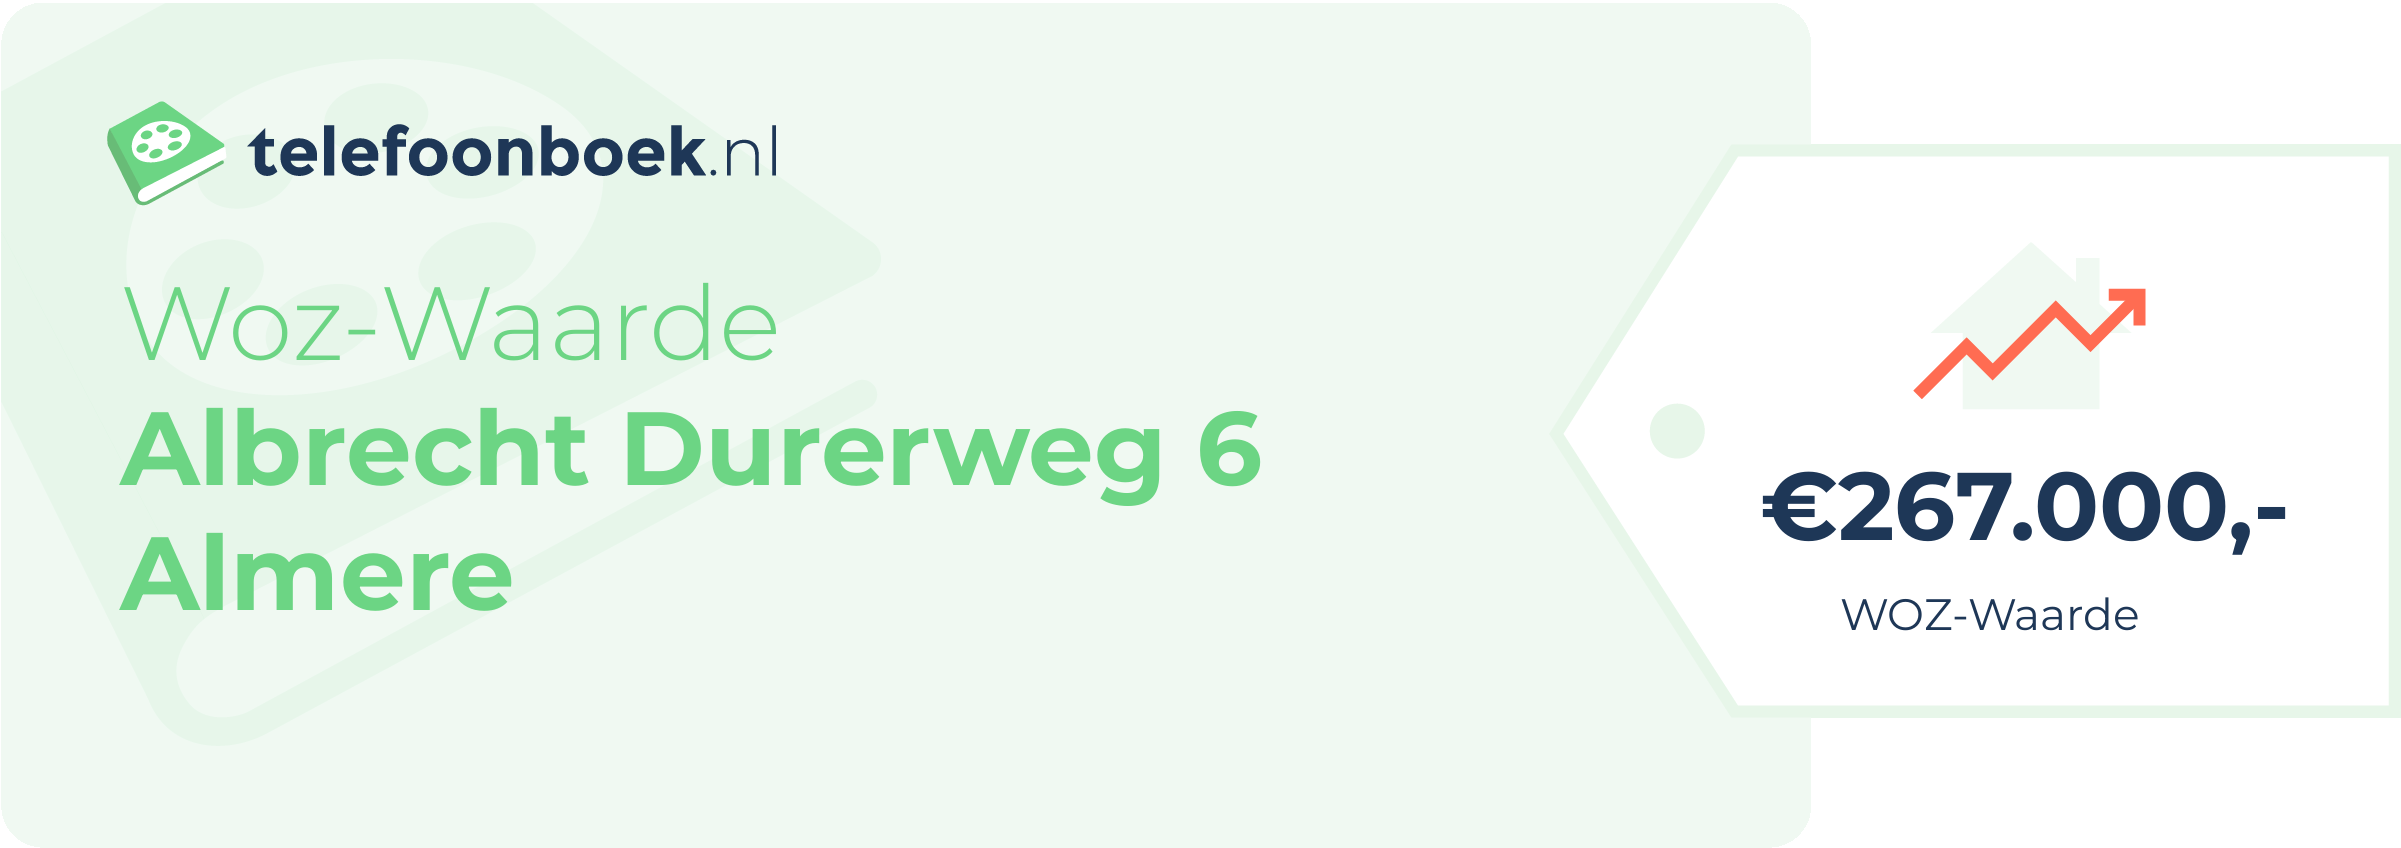 WOZ-waarde Albrecht Durerweg 6 Almere